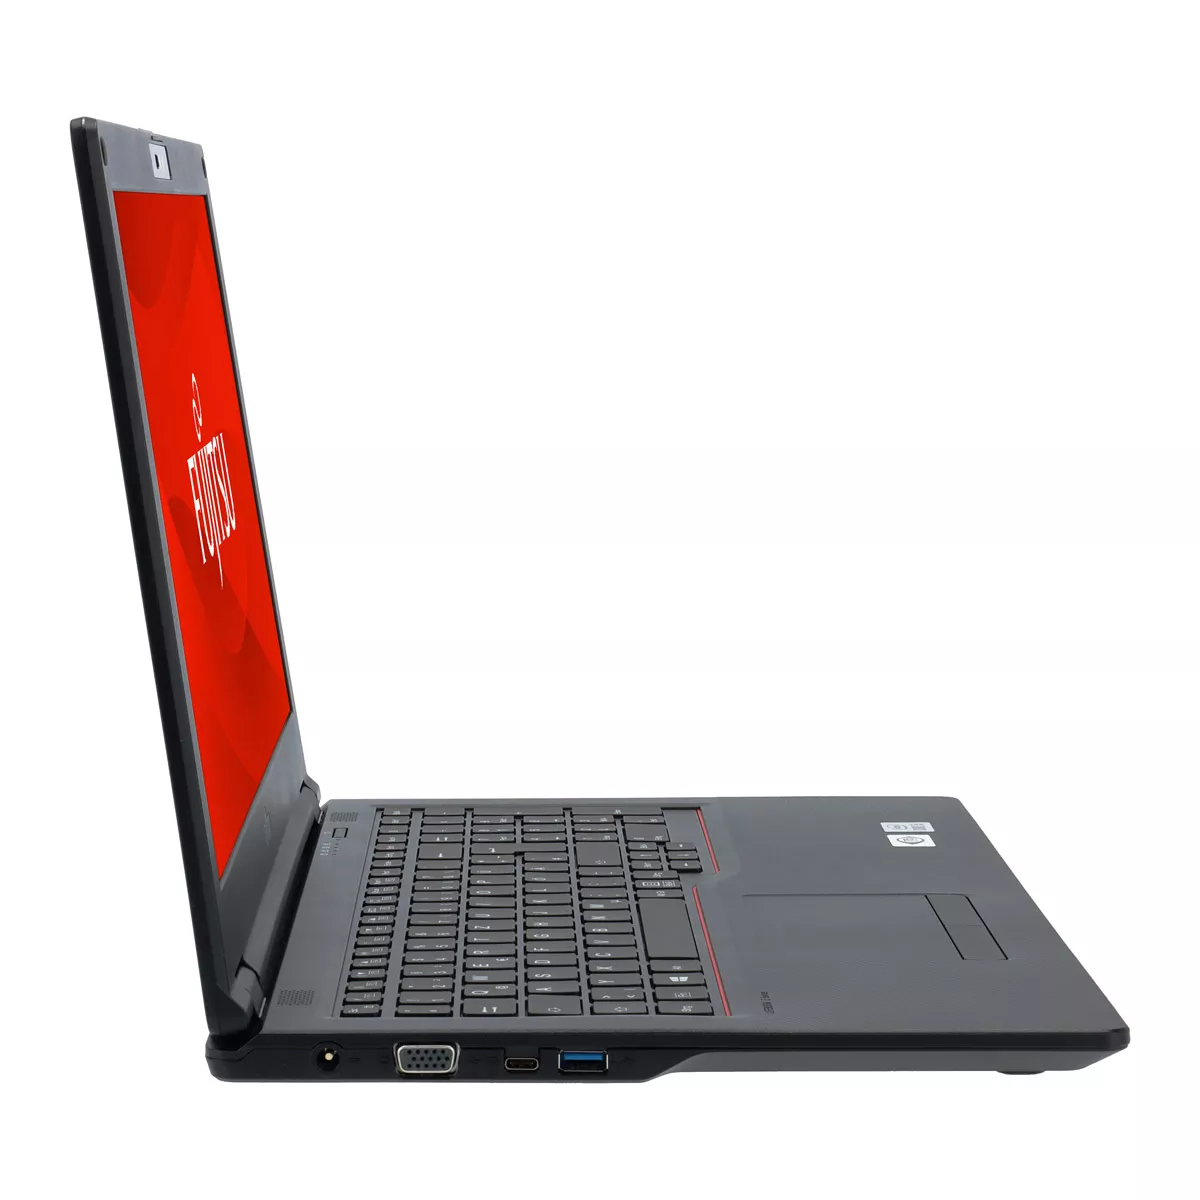 Fujitsu Lifebook E558 Core i5 8250U Full-HD 8 GB DDR4 240 M.2 SSD Webcam A